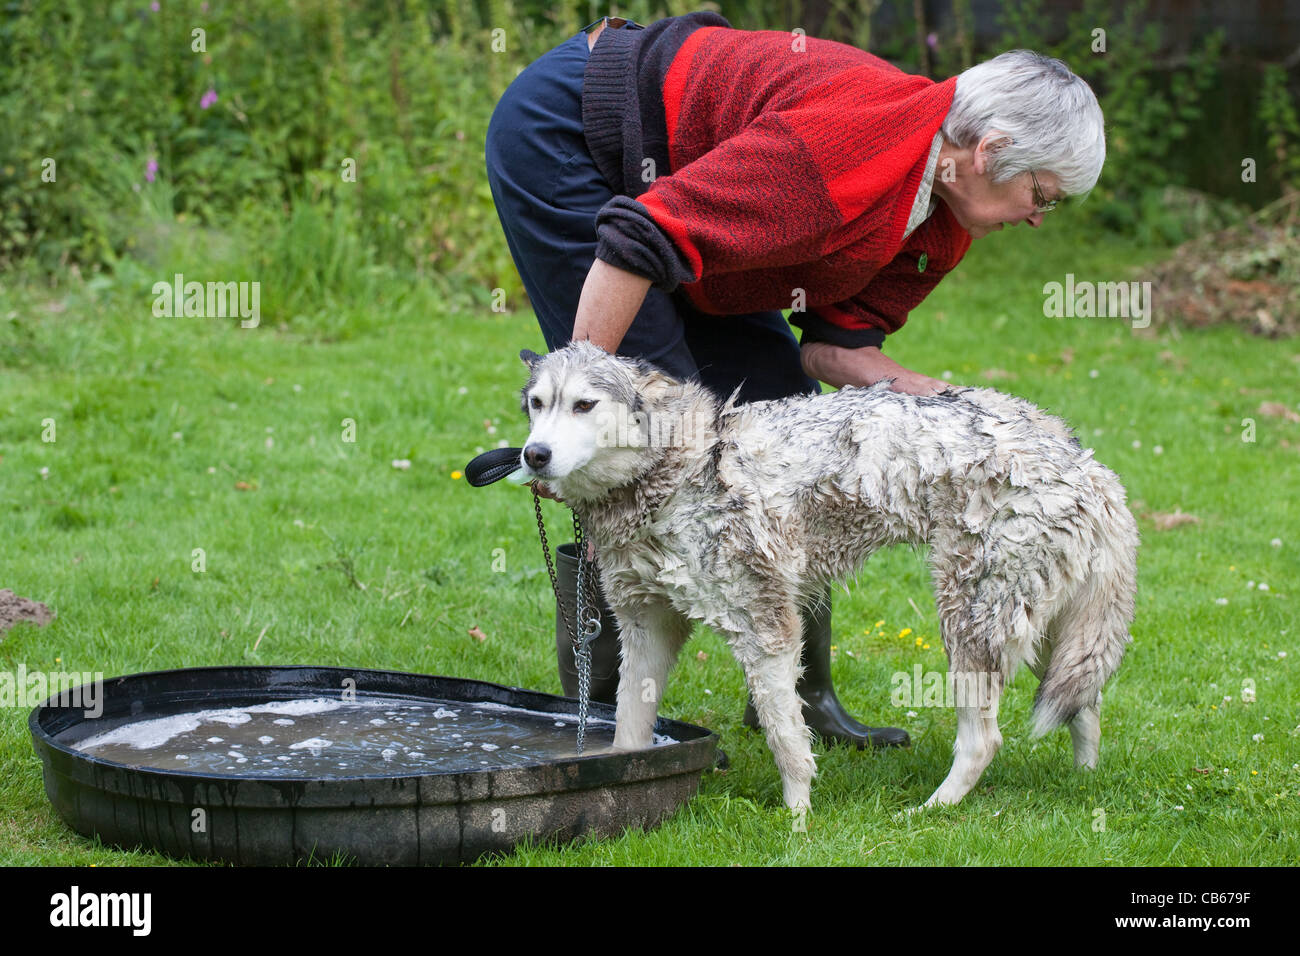 Husky Canis lupus familiaris pendant le lavage, la couche près de parasites externes ; les cerfs, moutons tiques Ixodes sp. Banque D'Images